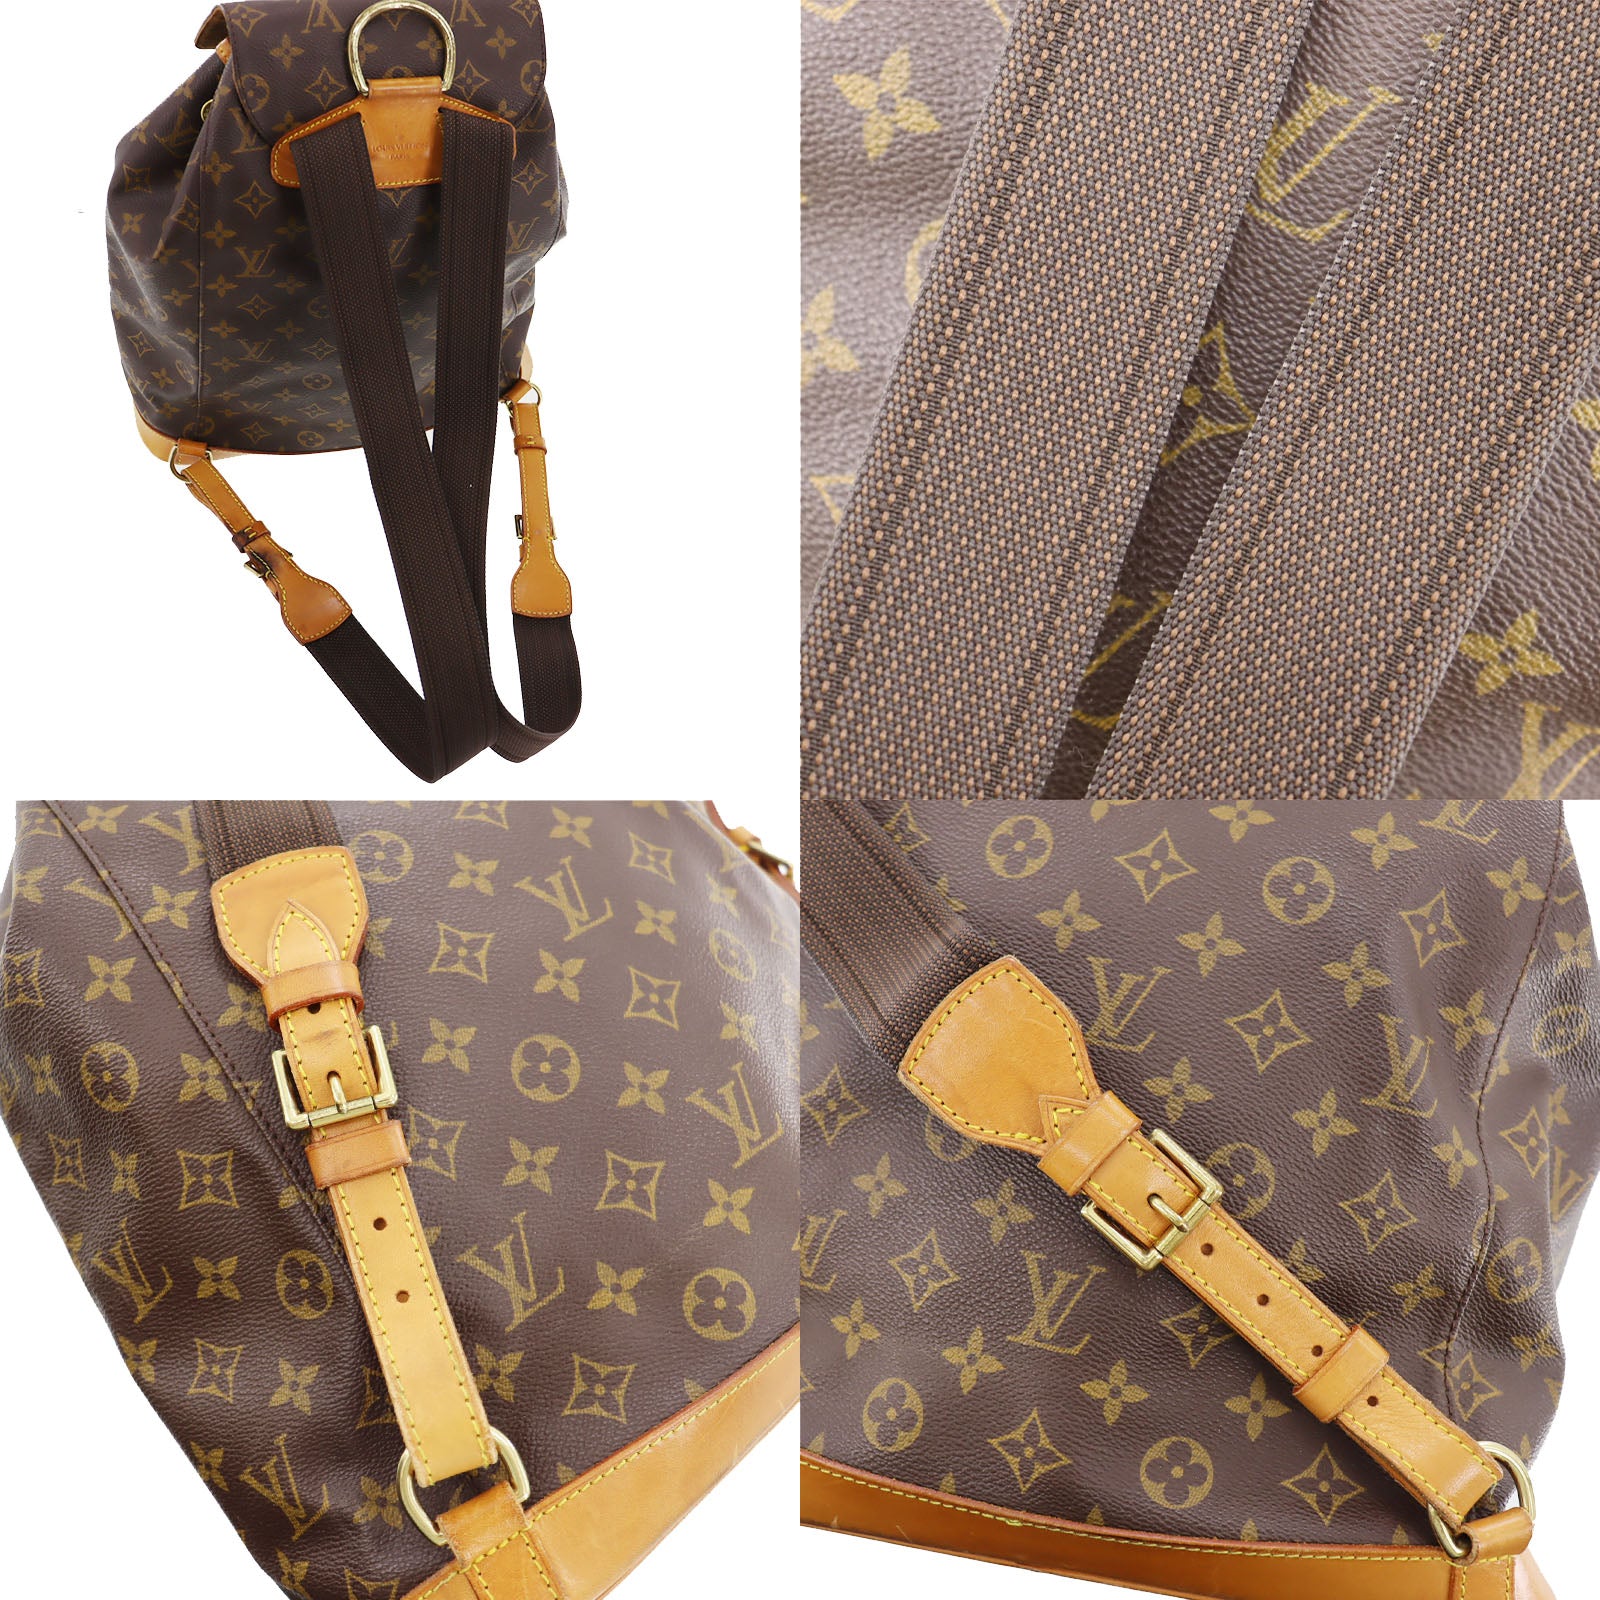 AUTHENTIC LOUIS VUITTON M51135 Monogram Montsouris GM Backpack Bag